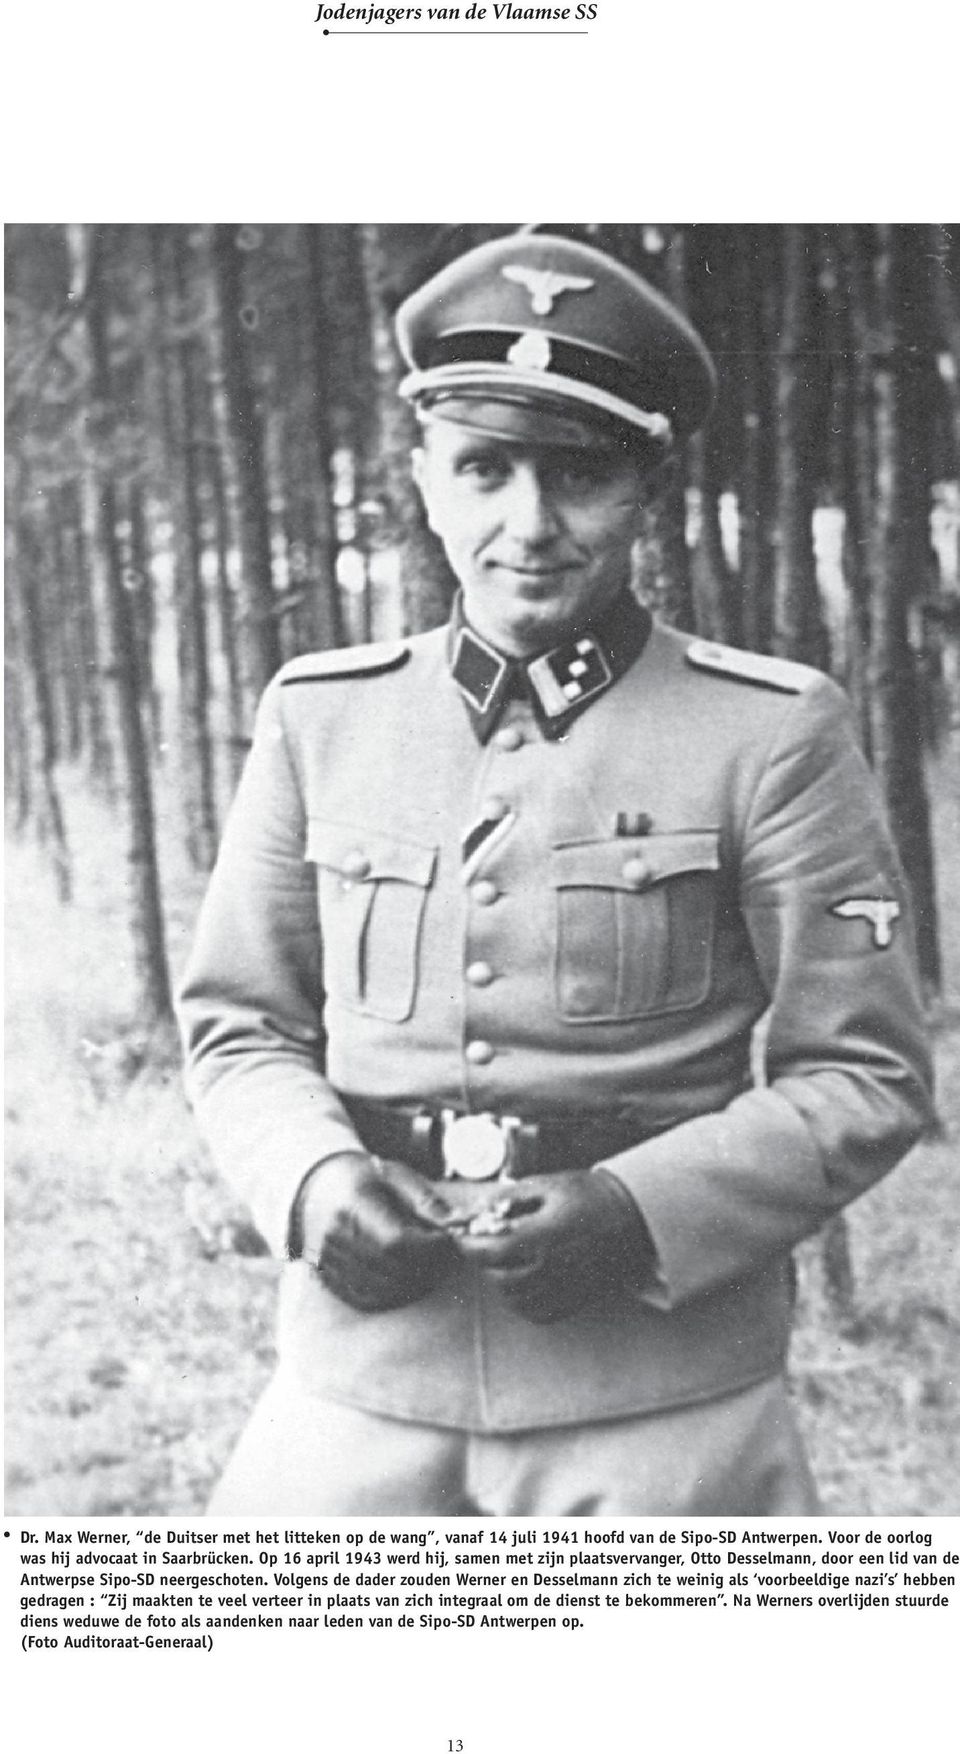 Op 16 april 1943 werd hij, samen met zijn plaatsvervanger, Otto Dessel mann, door een lid van de Antwerpse Sipo-SD neergeschoten.